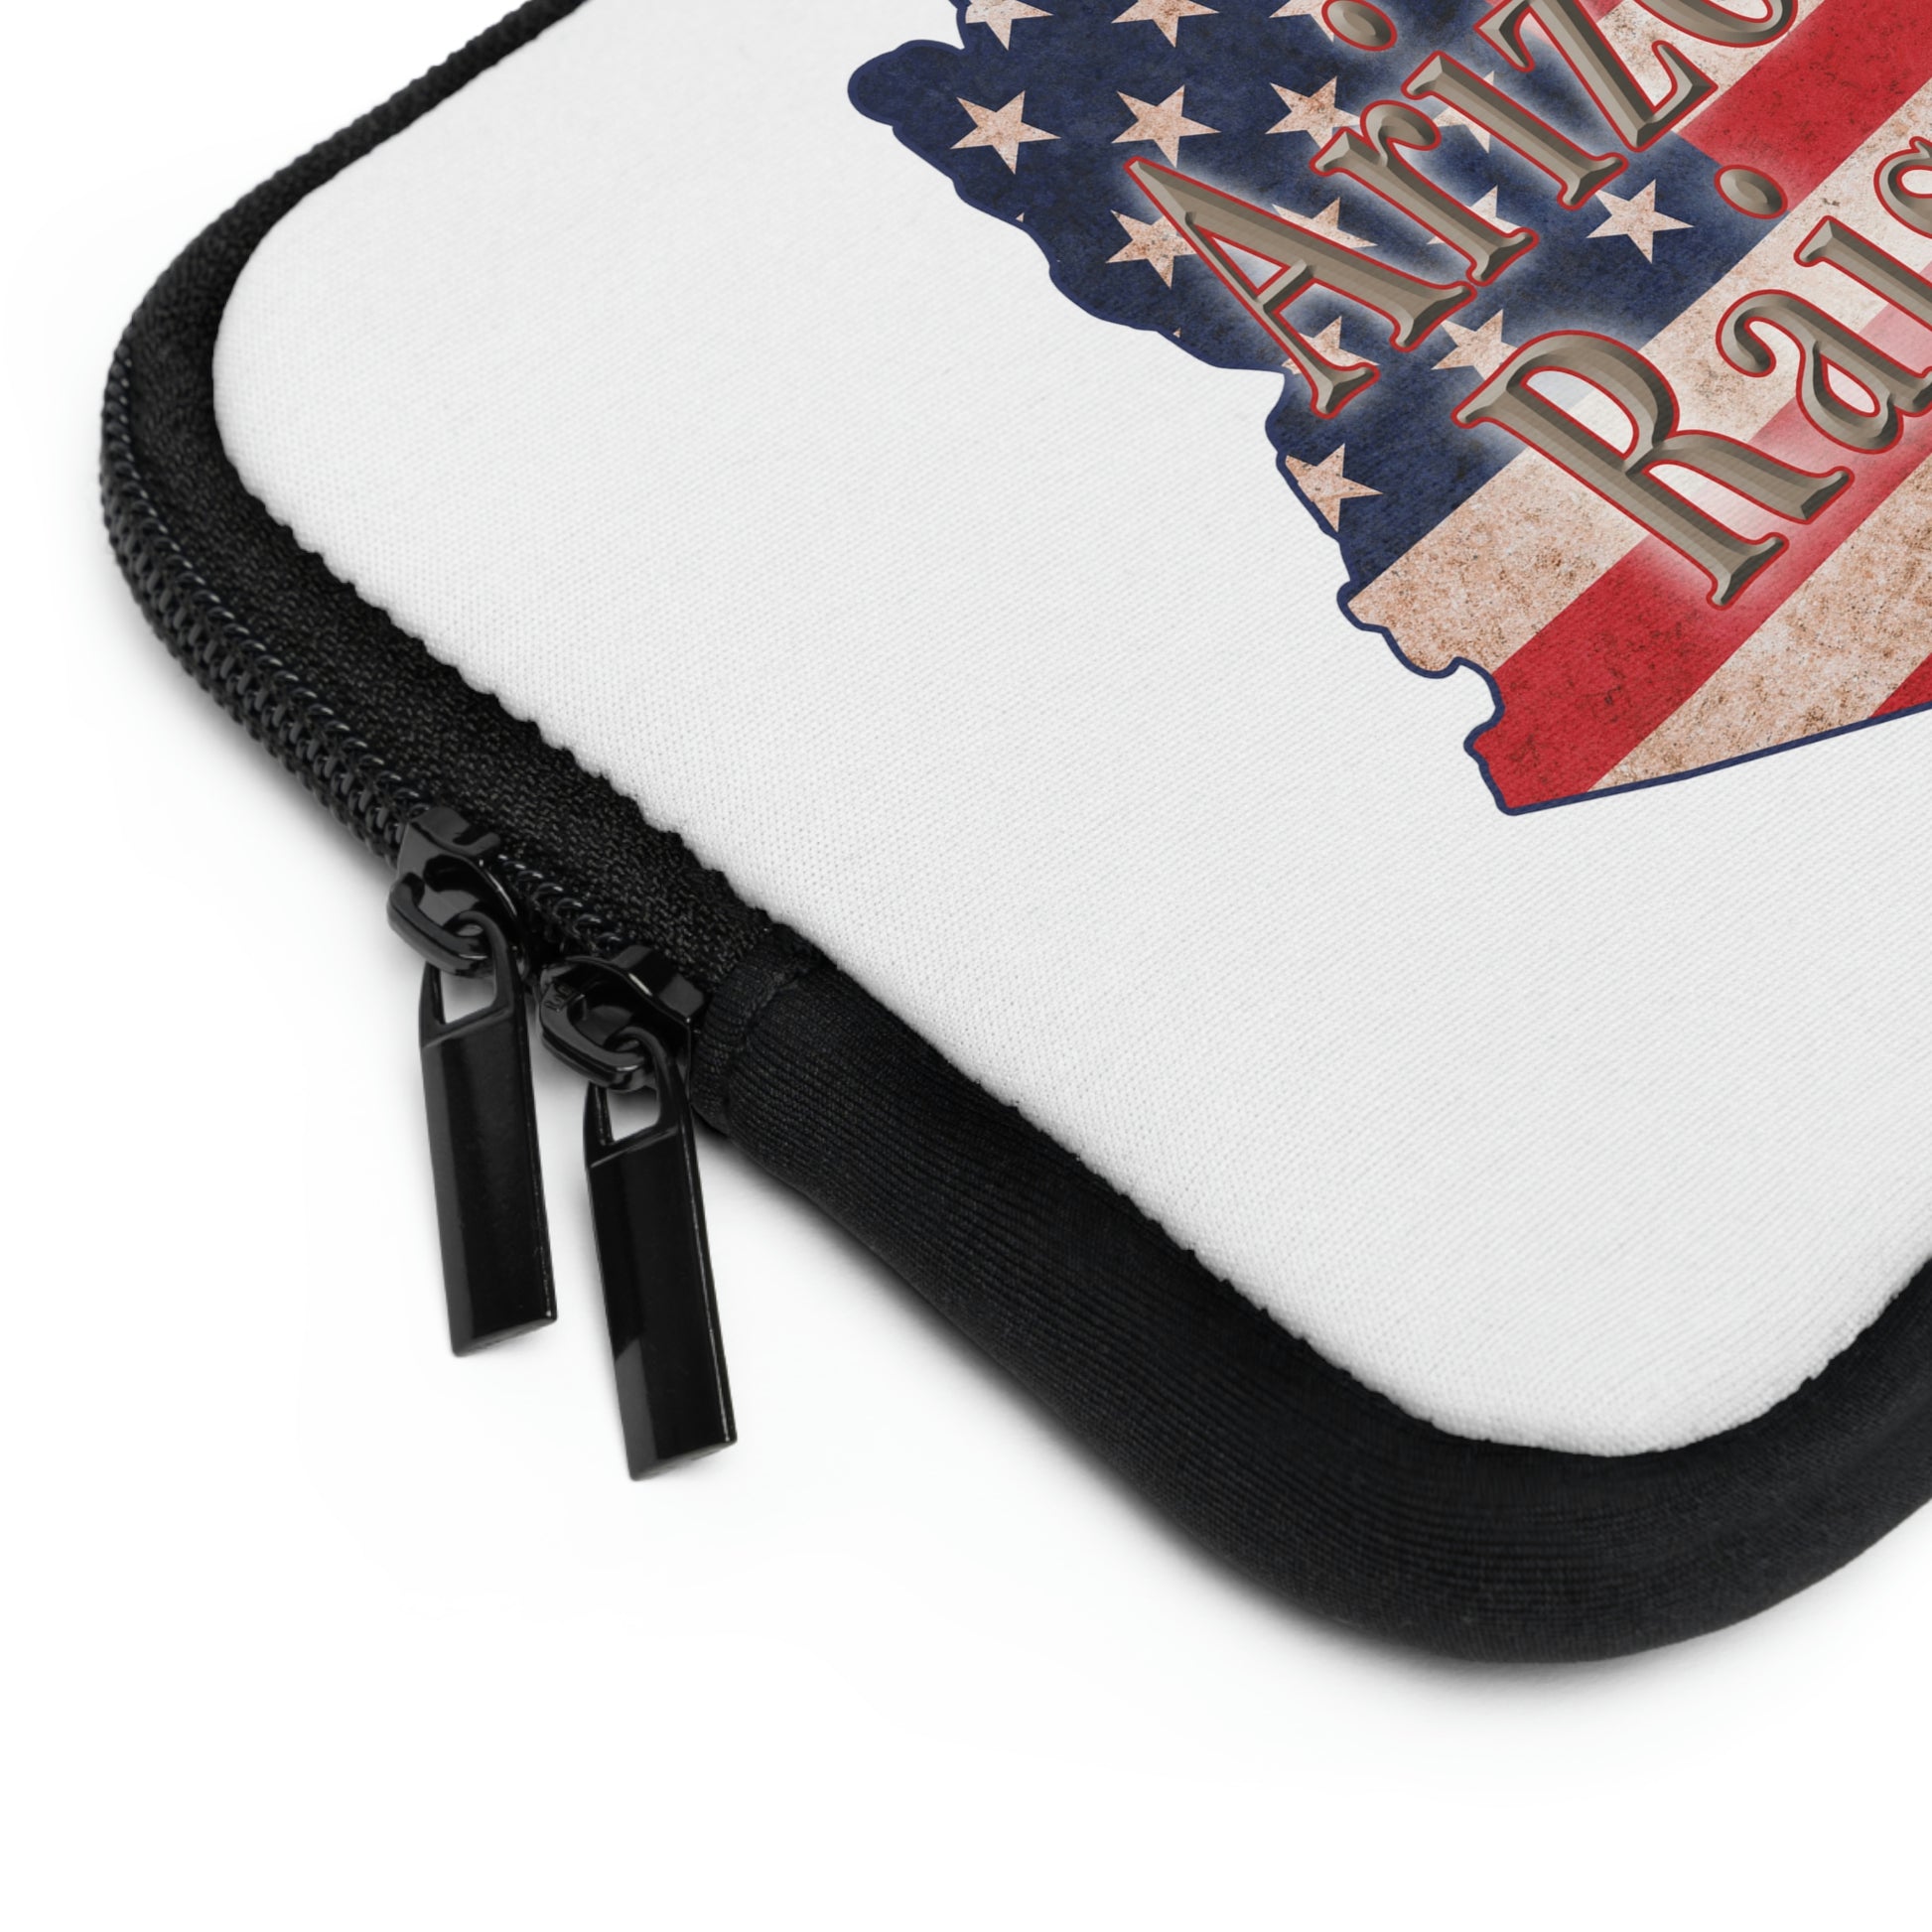 Arizona Raised US Flag Print Laptop Sleeve